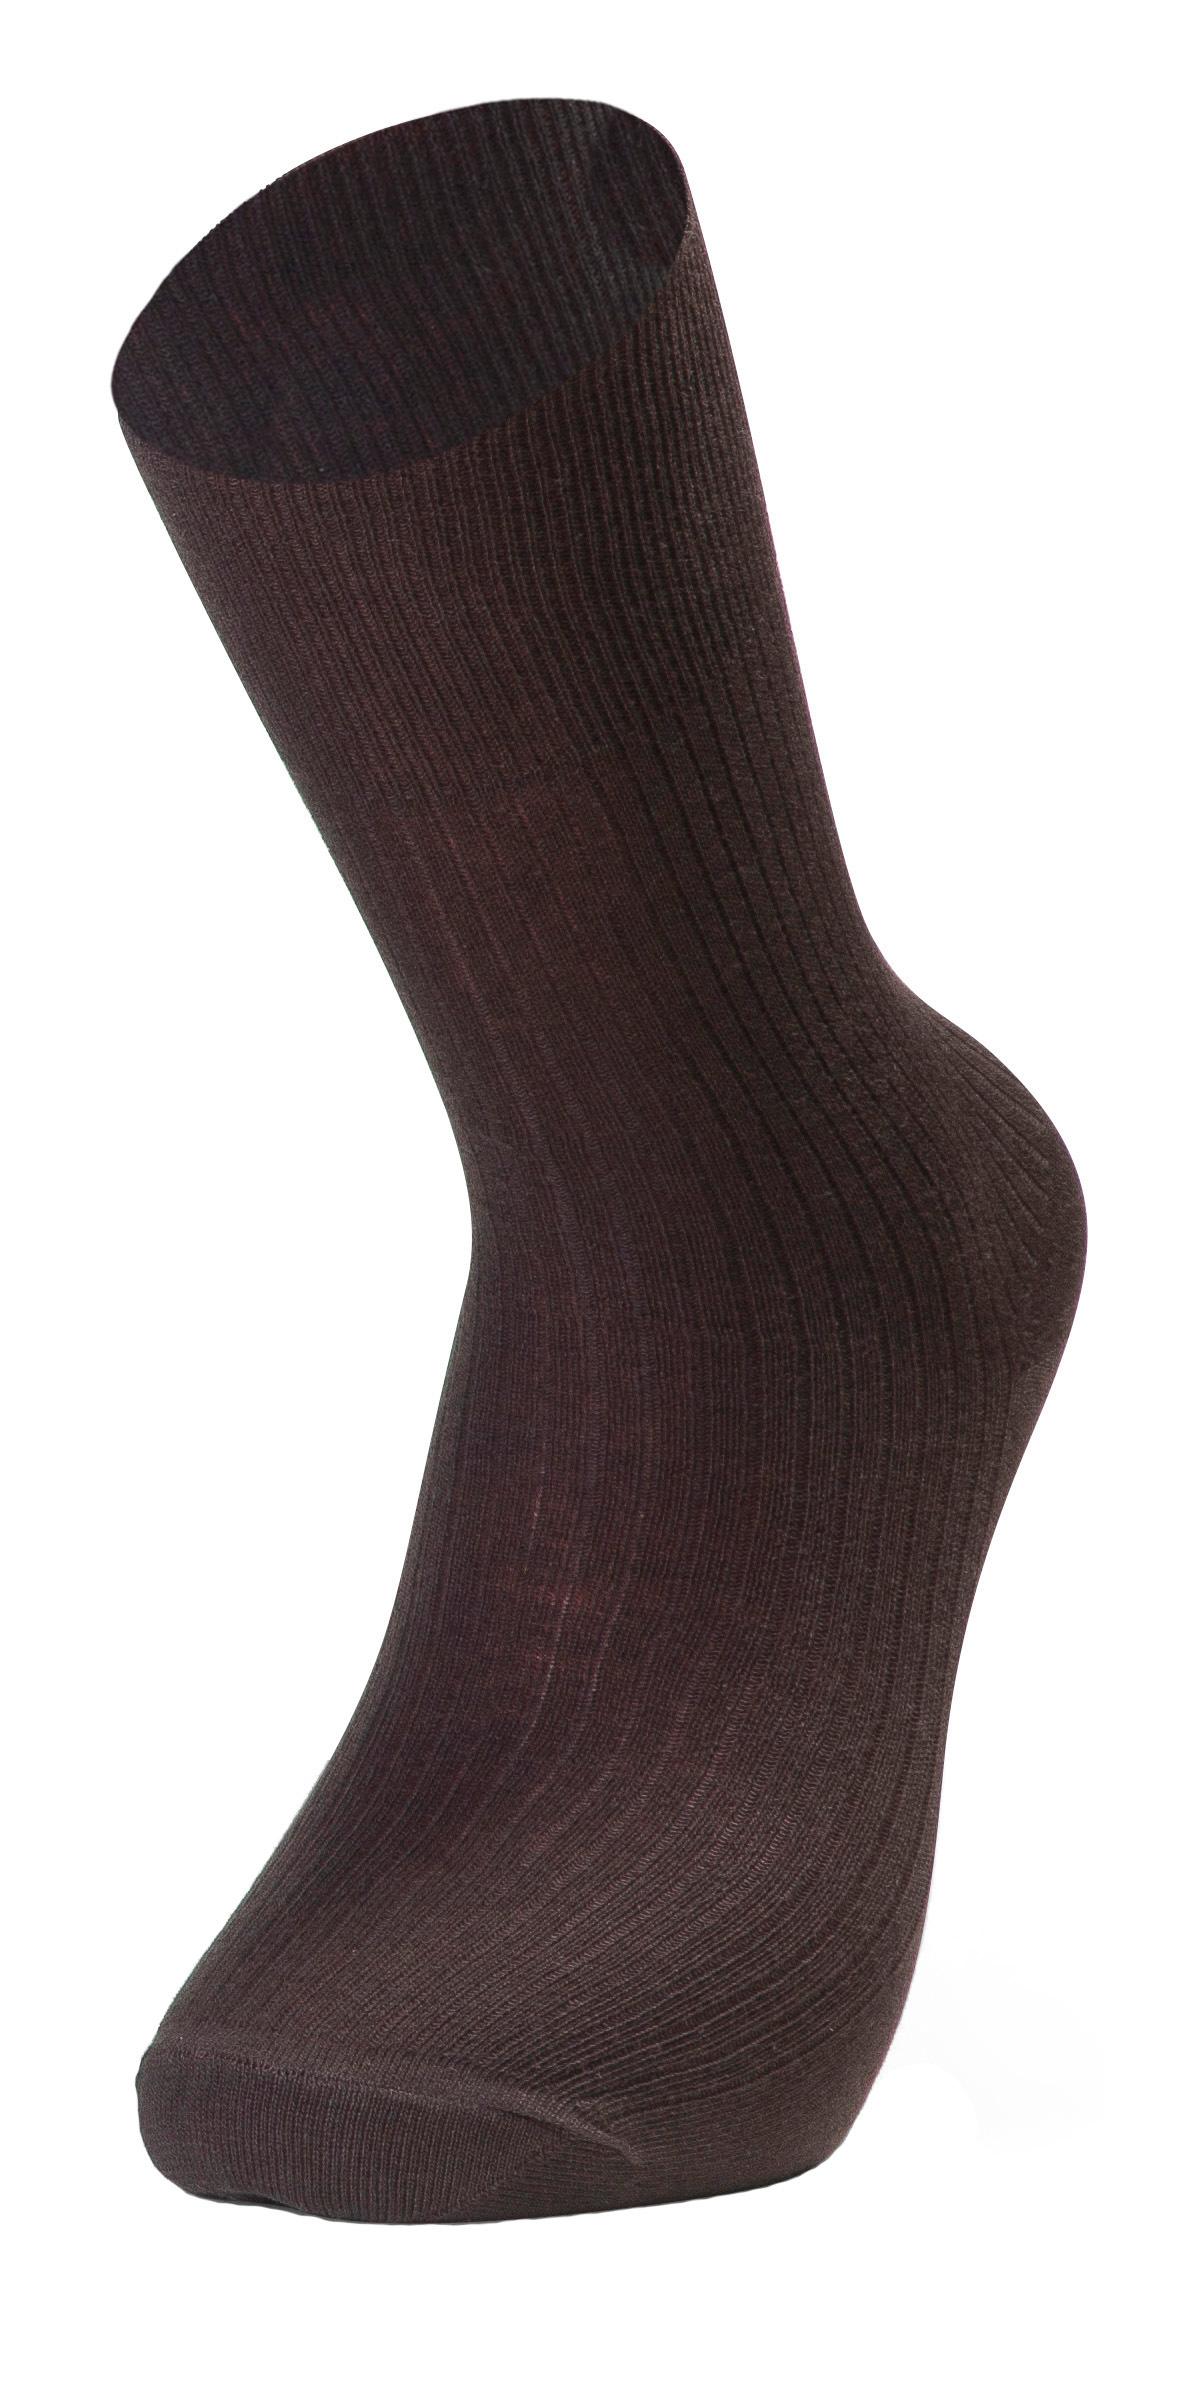 Selected image for SOCKS BMD Muške čarape art. 203 braon